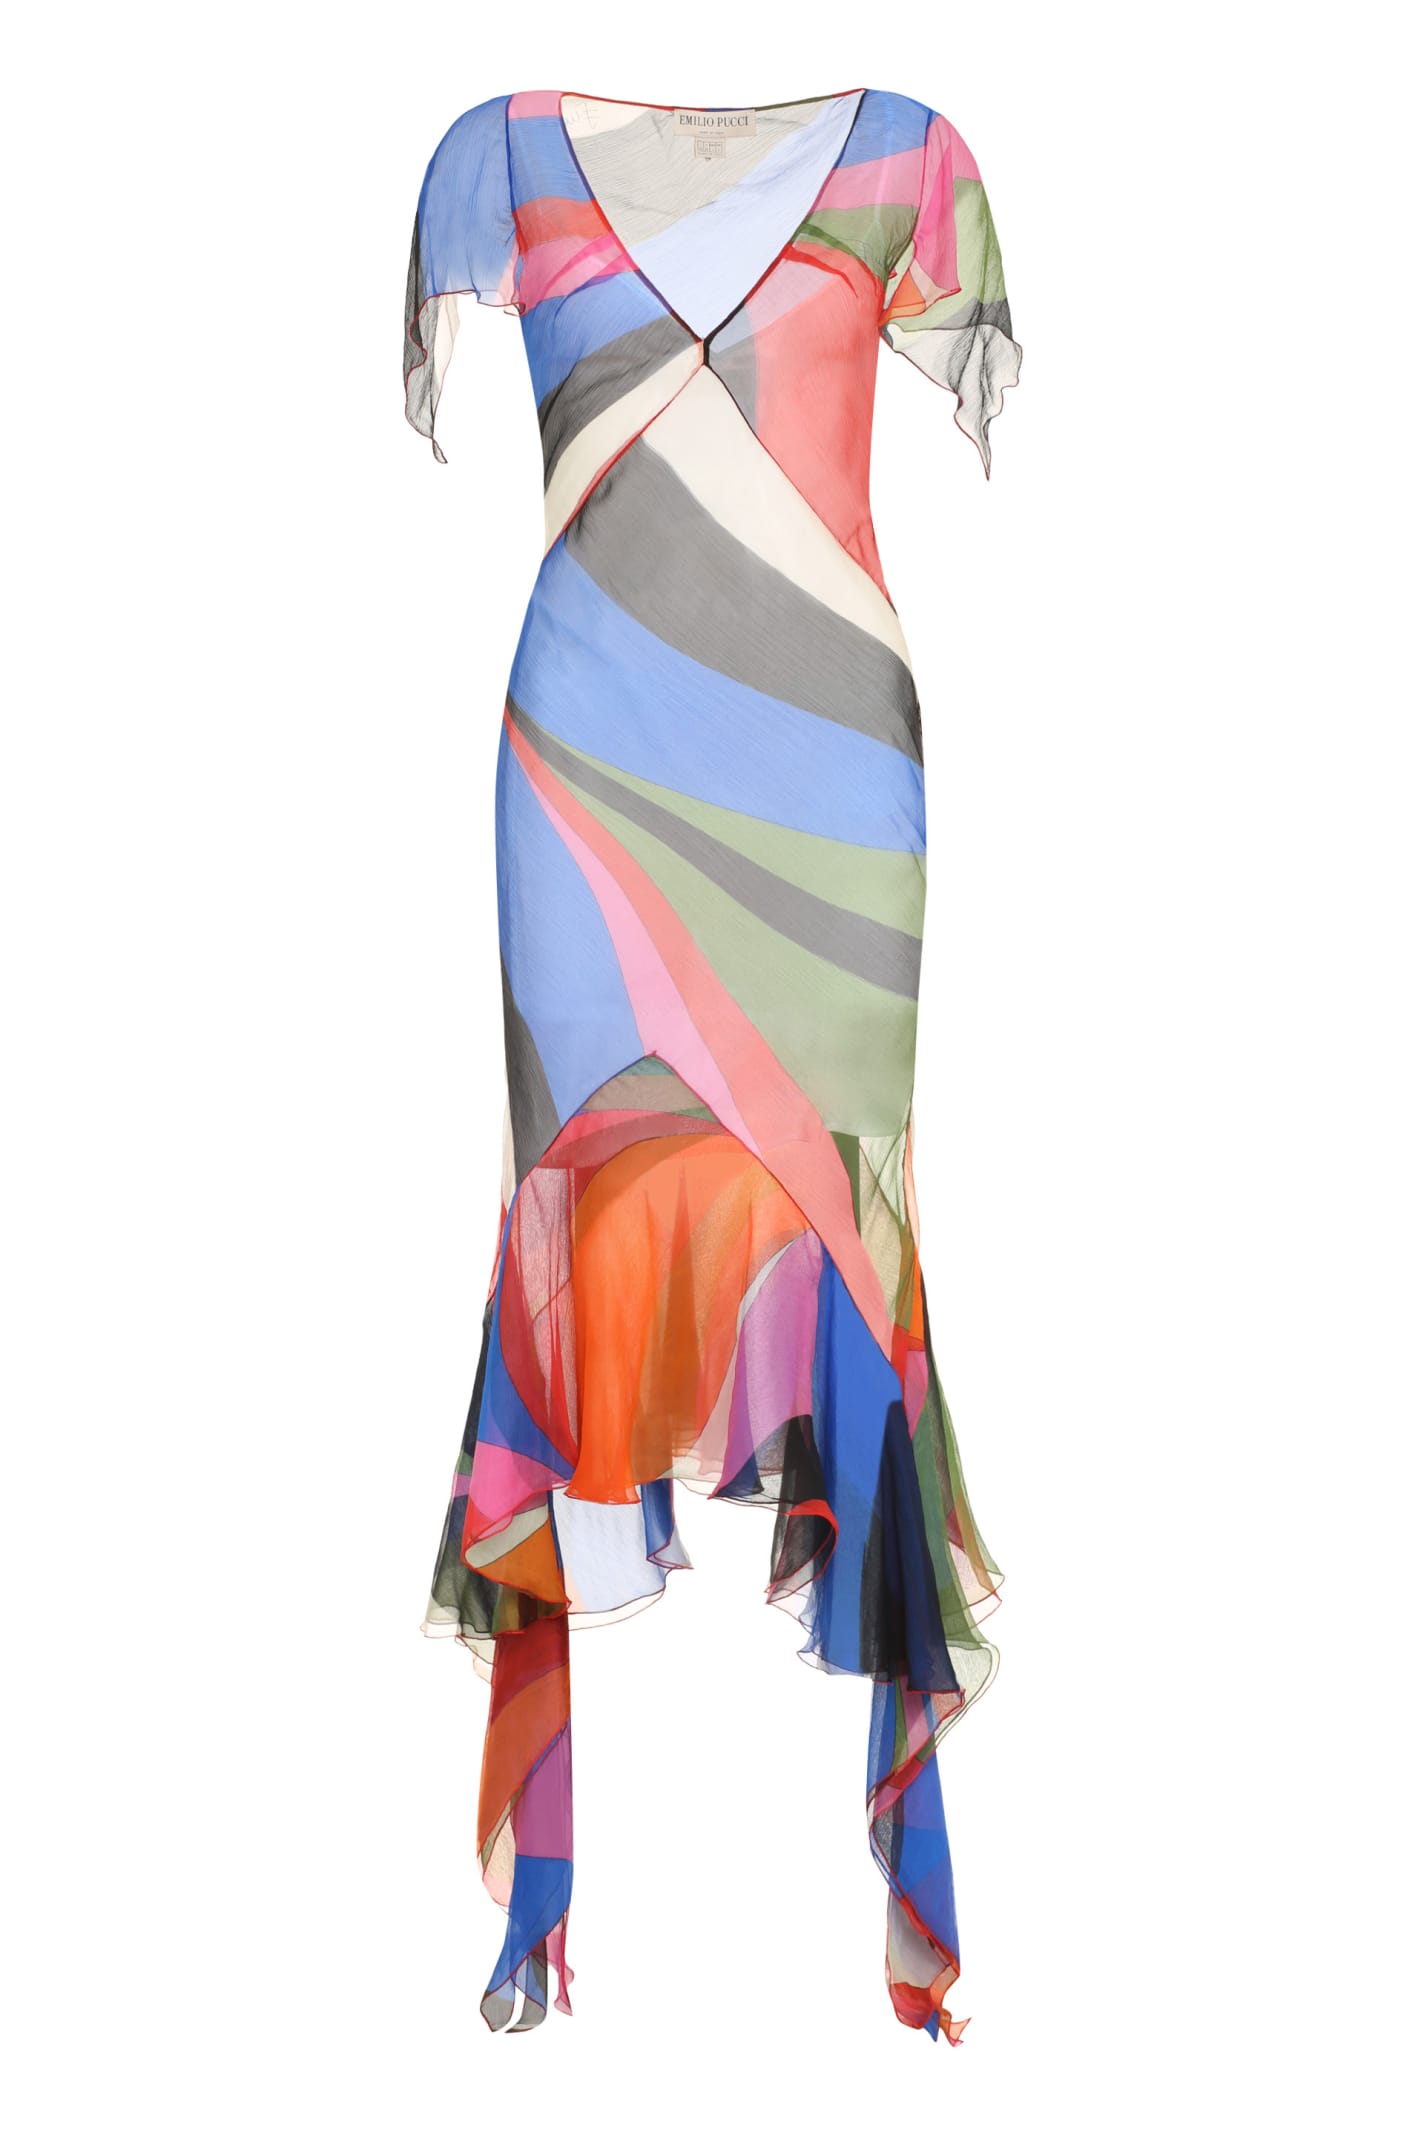 Emilio Pucci Printed Silk Dress